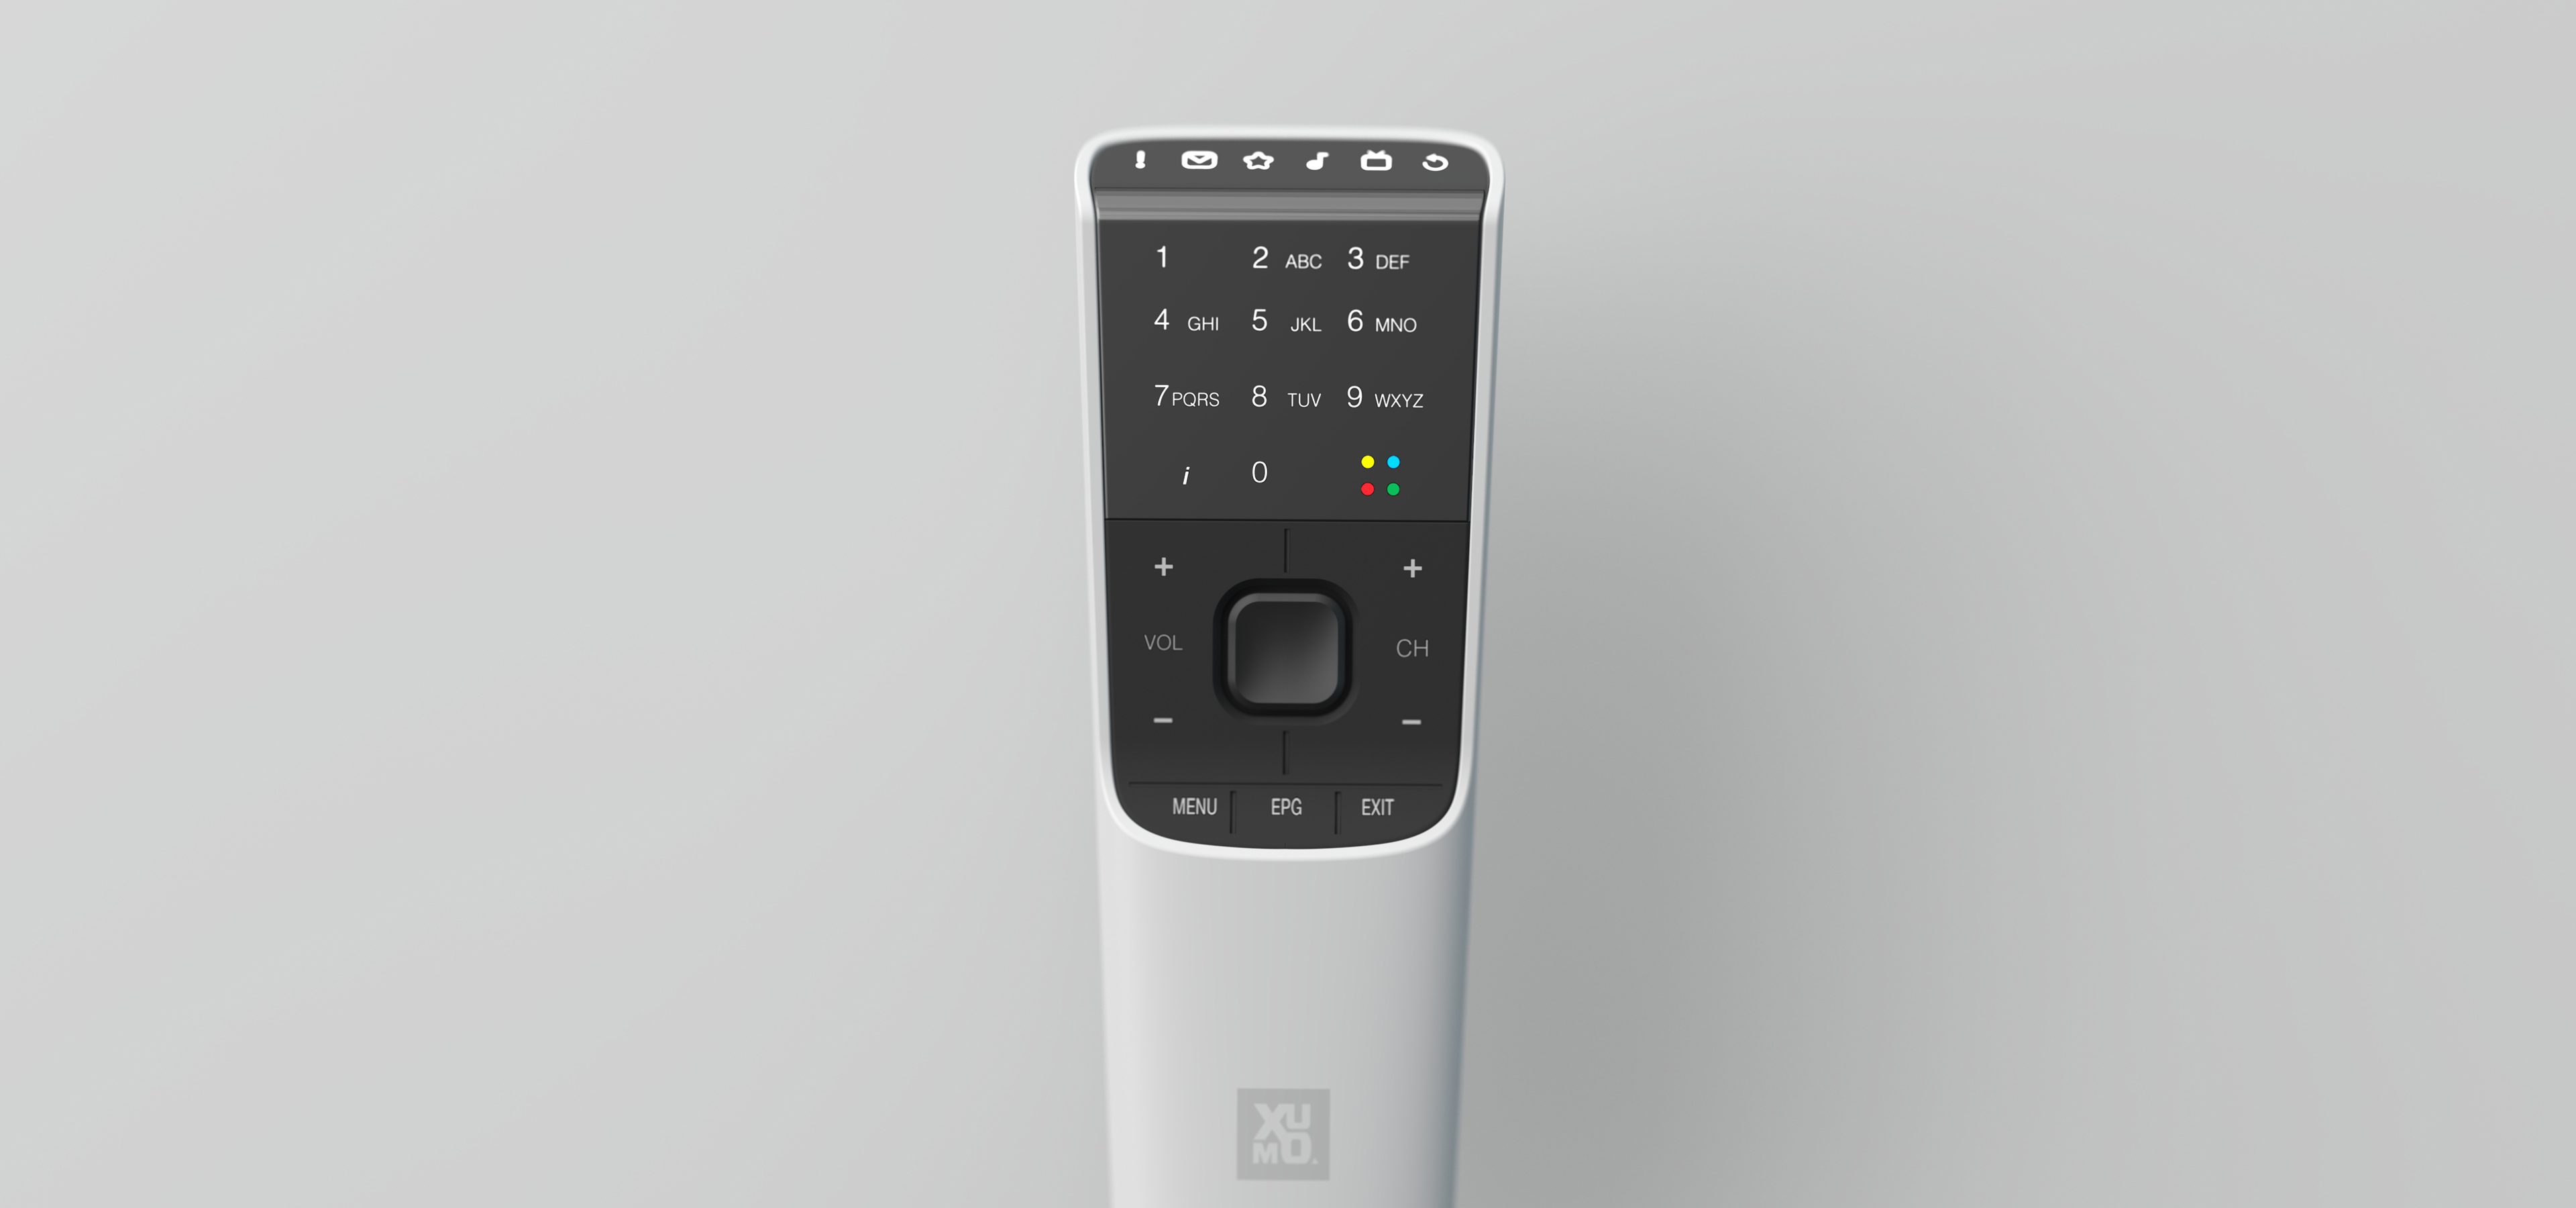 Xumo remote design identity.